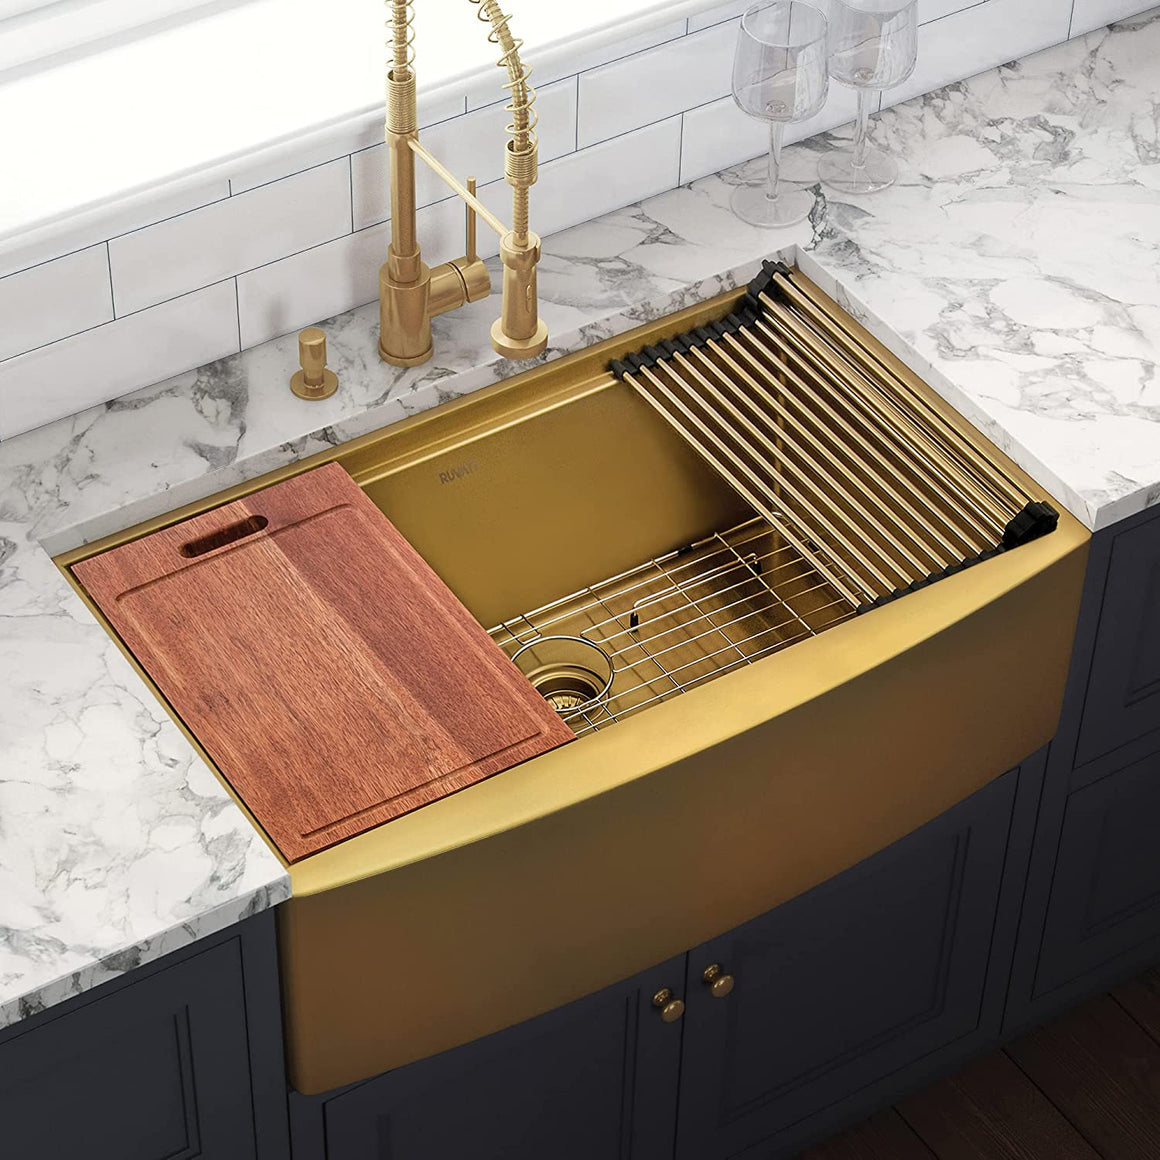 Ruvati 33-inch Matte Gold Workstation Apron-Front Brass Tone Stainless Steel Kitchen Sink – RVH9207GG